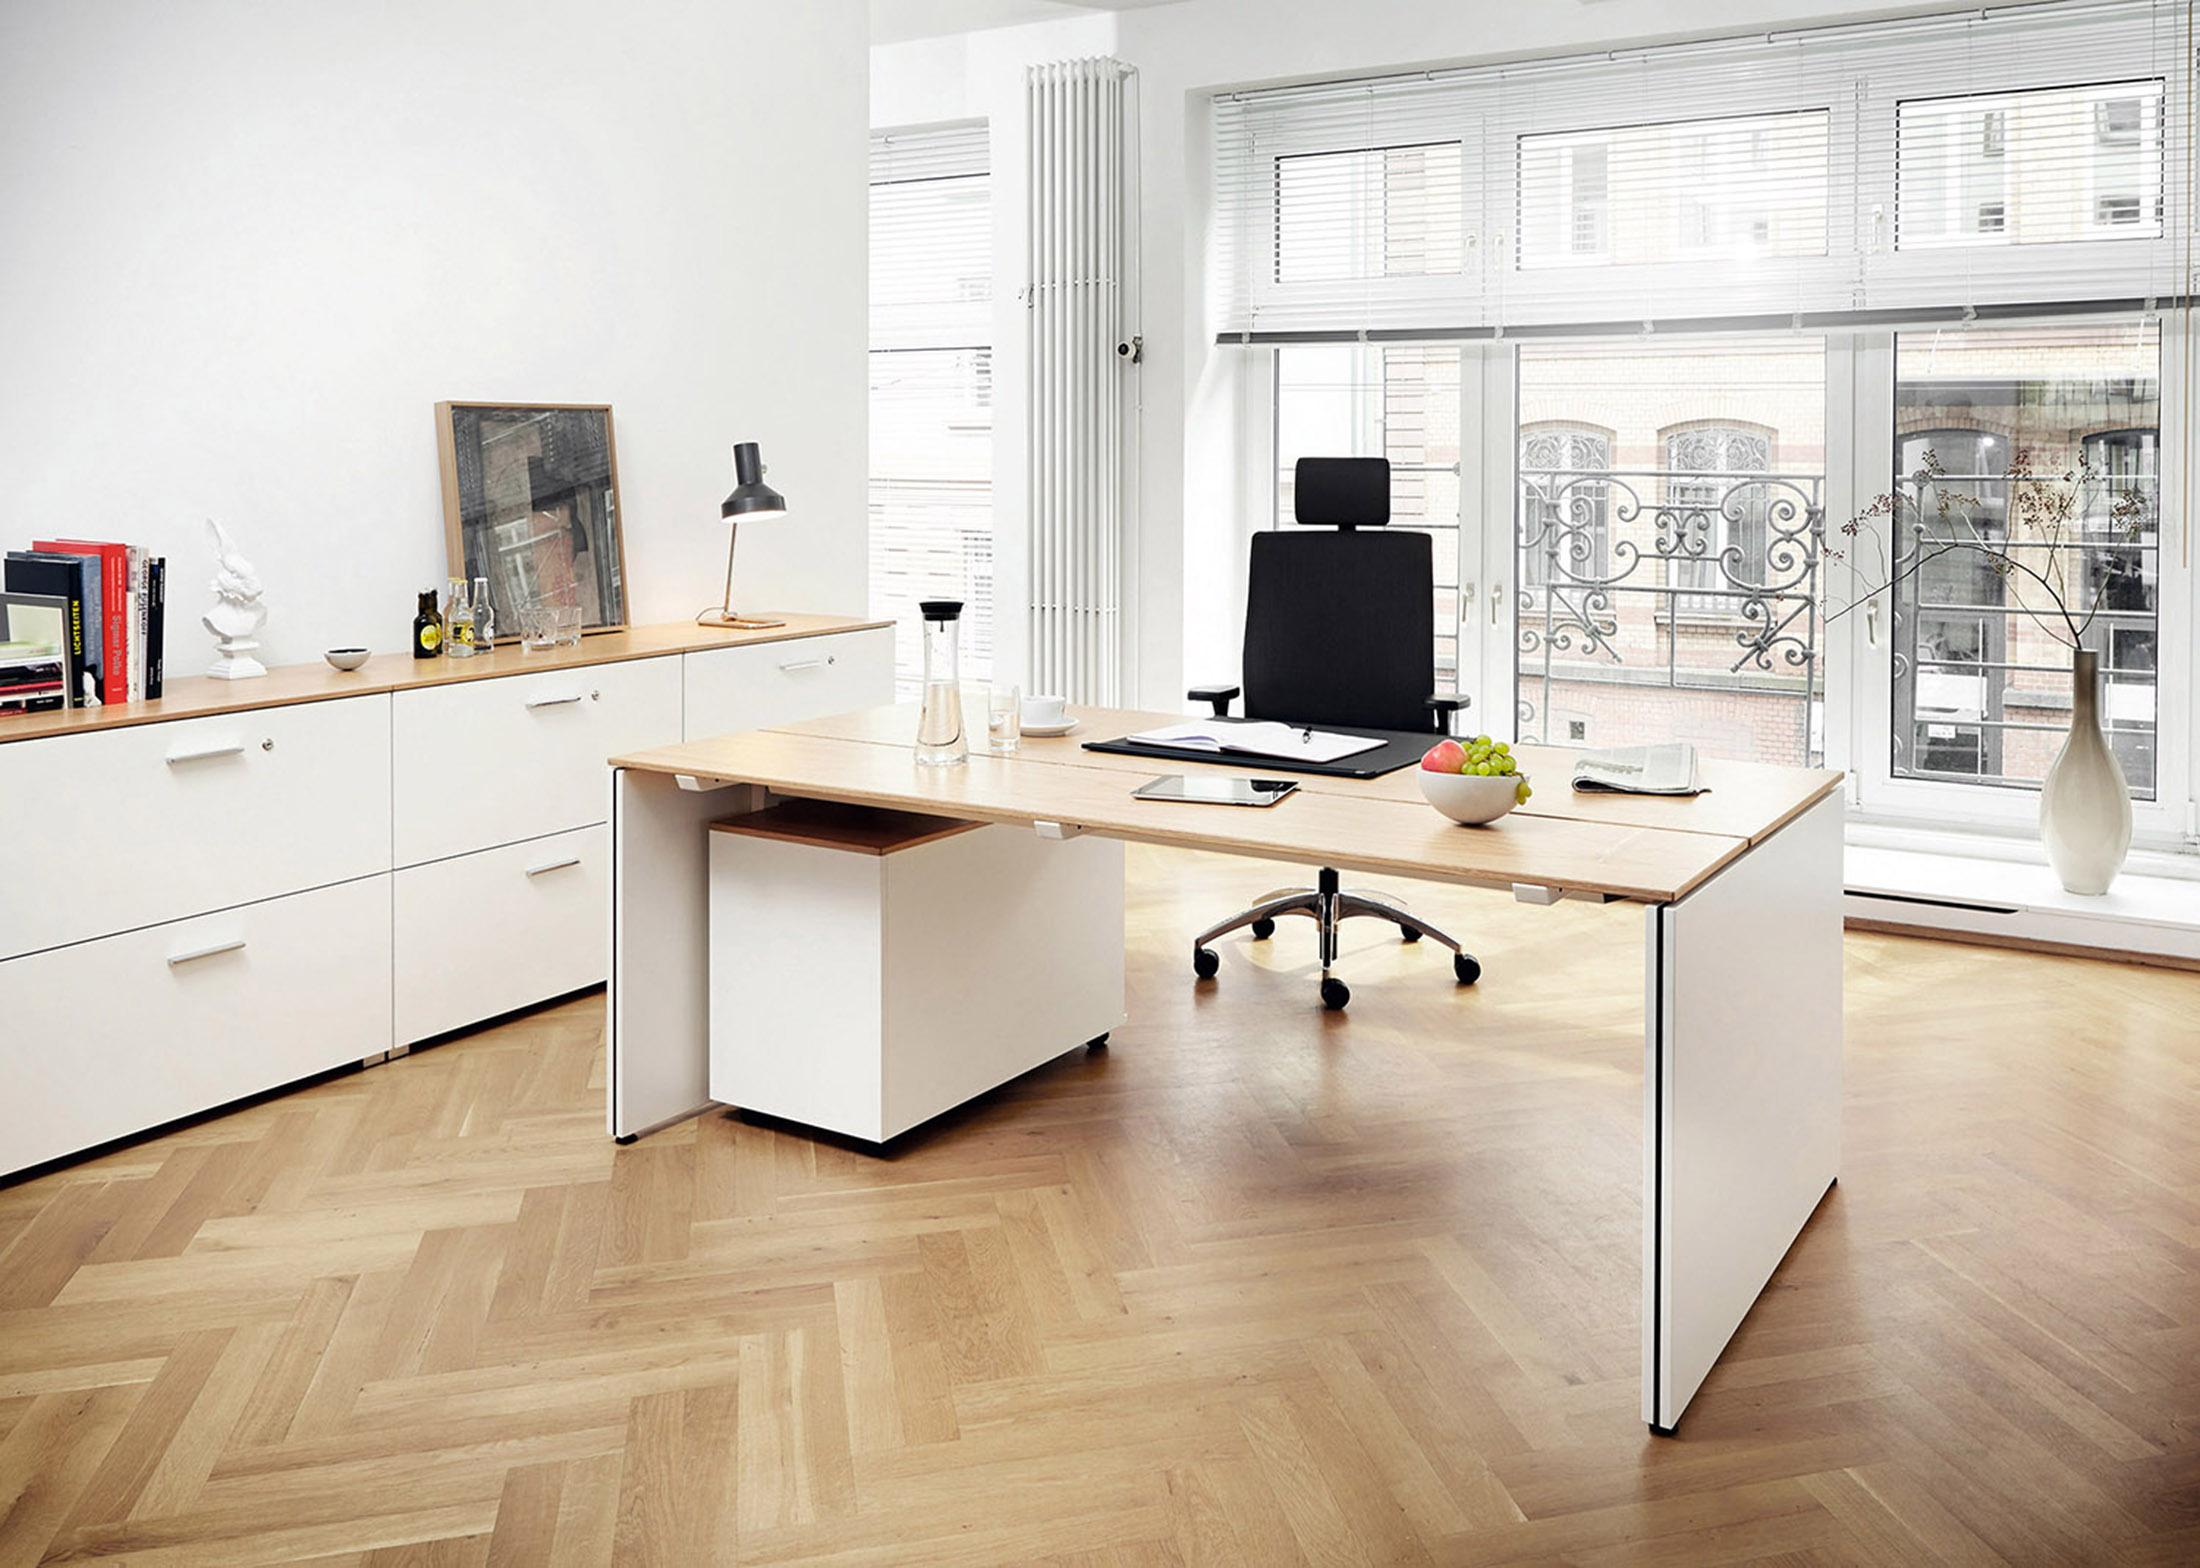 Modernes Büro #büro #schreibtisch #arbeitszimmer #zimmergestaltung ©König+Neurath